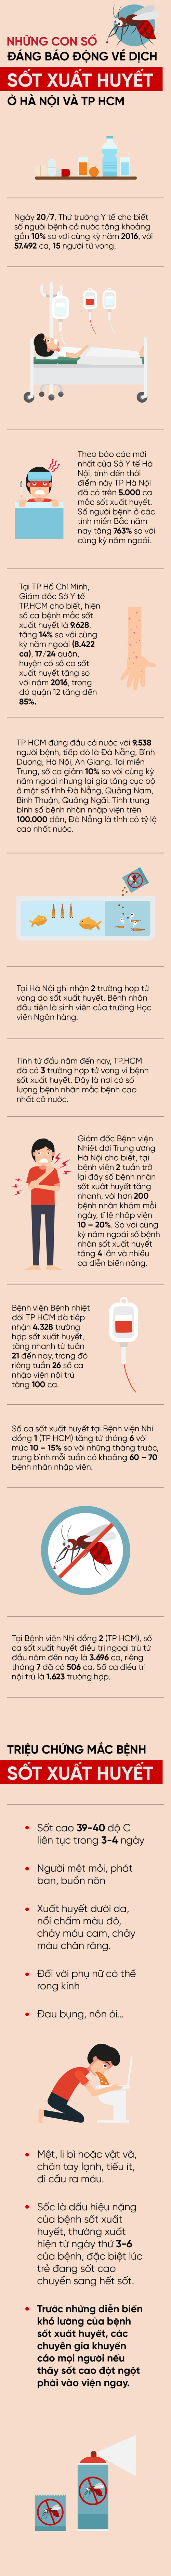 Infographic: Những con số đáng báo động về dịch sốt xuất huyết ở Sài Gòn và Hà Nội - Ảnh 1.